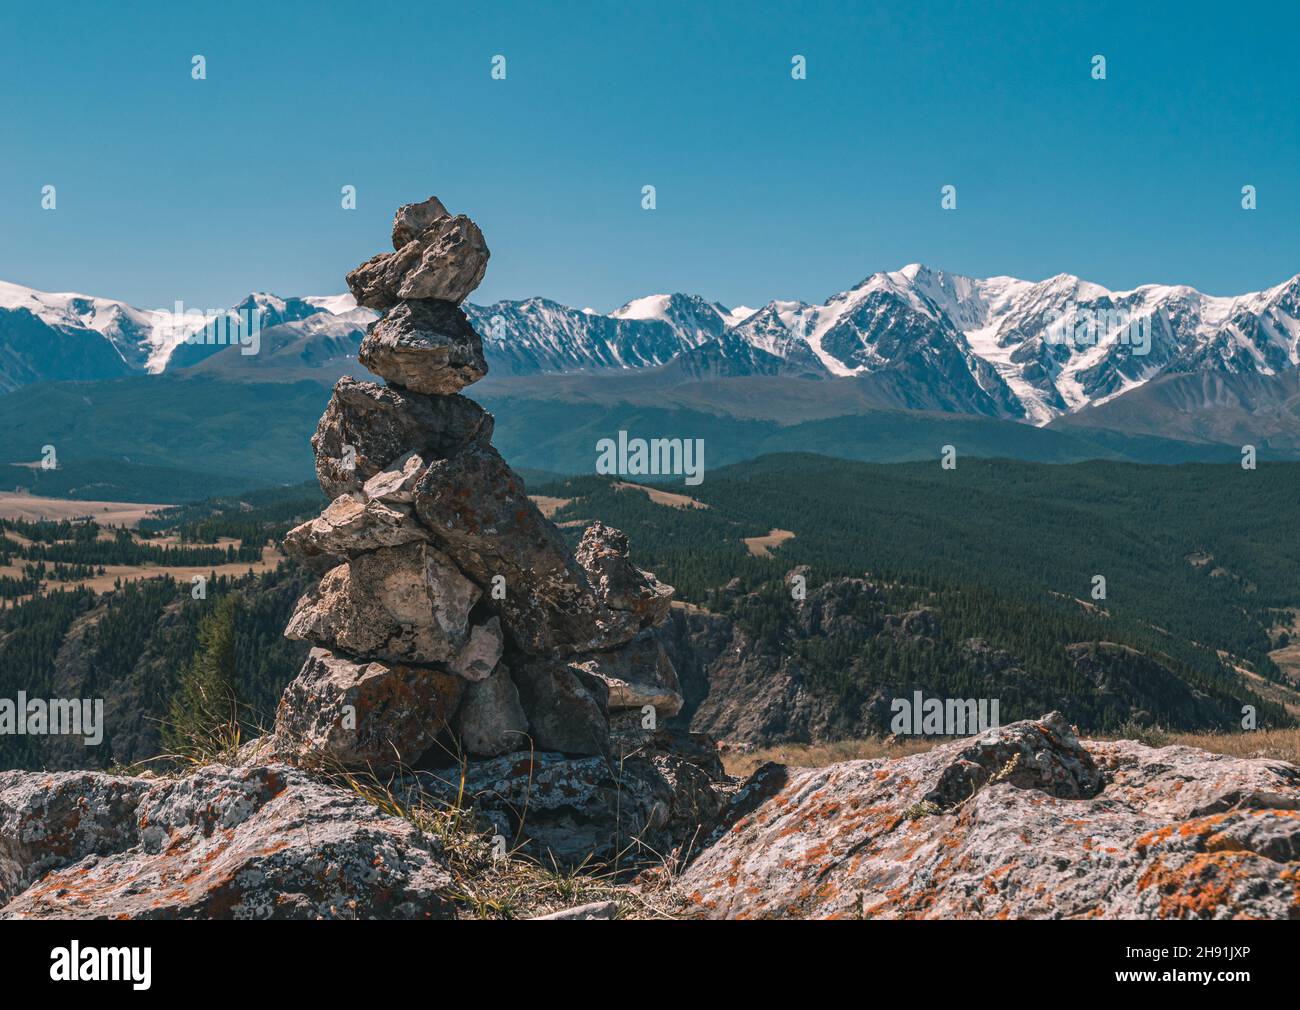 Le cairn de pierre et les montagnes enneigées sont des sommets en arrière-plan.Magnifique paysage de la région de l'Altay, Russie. Banque D'Images